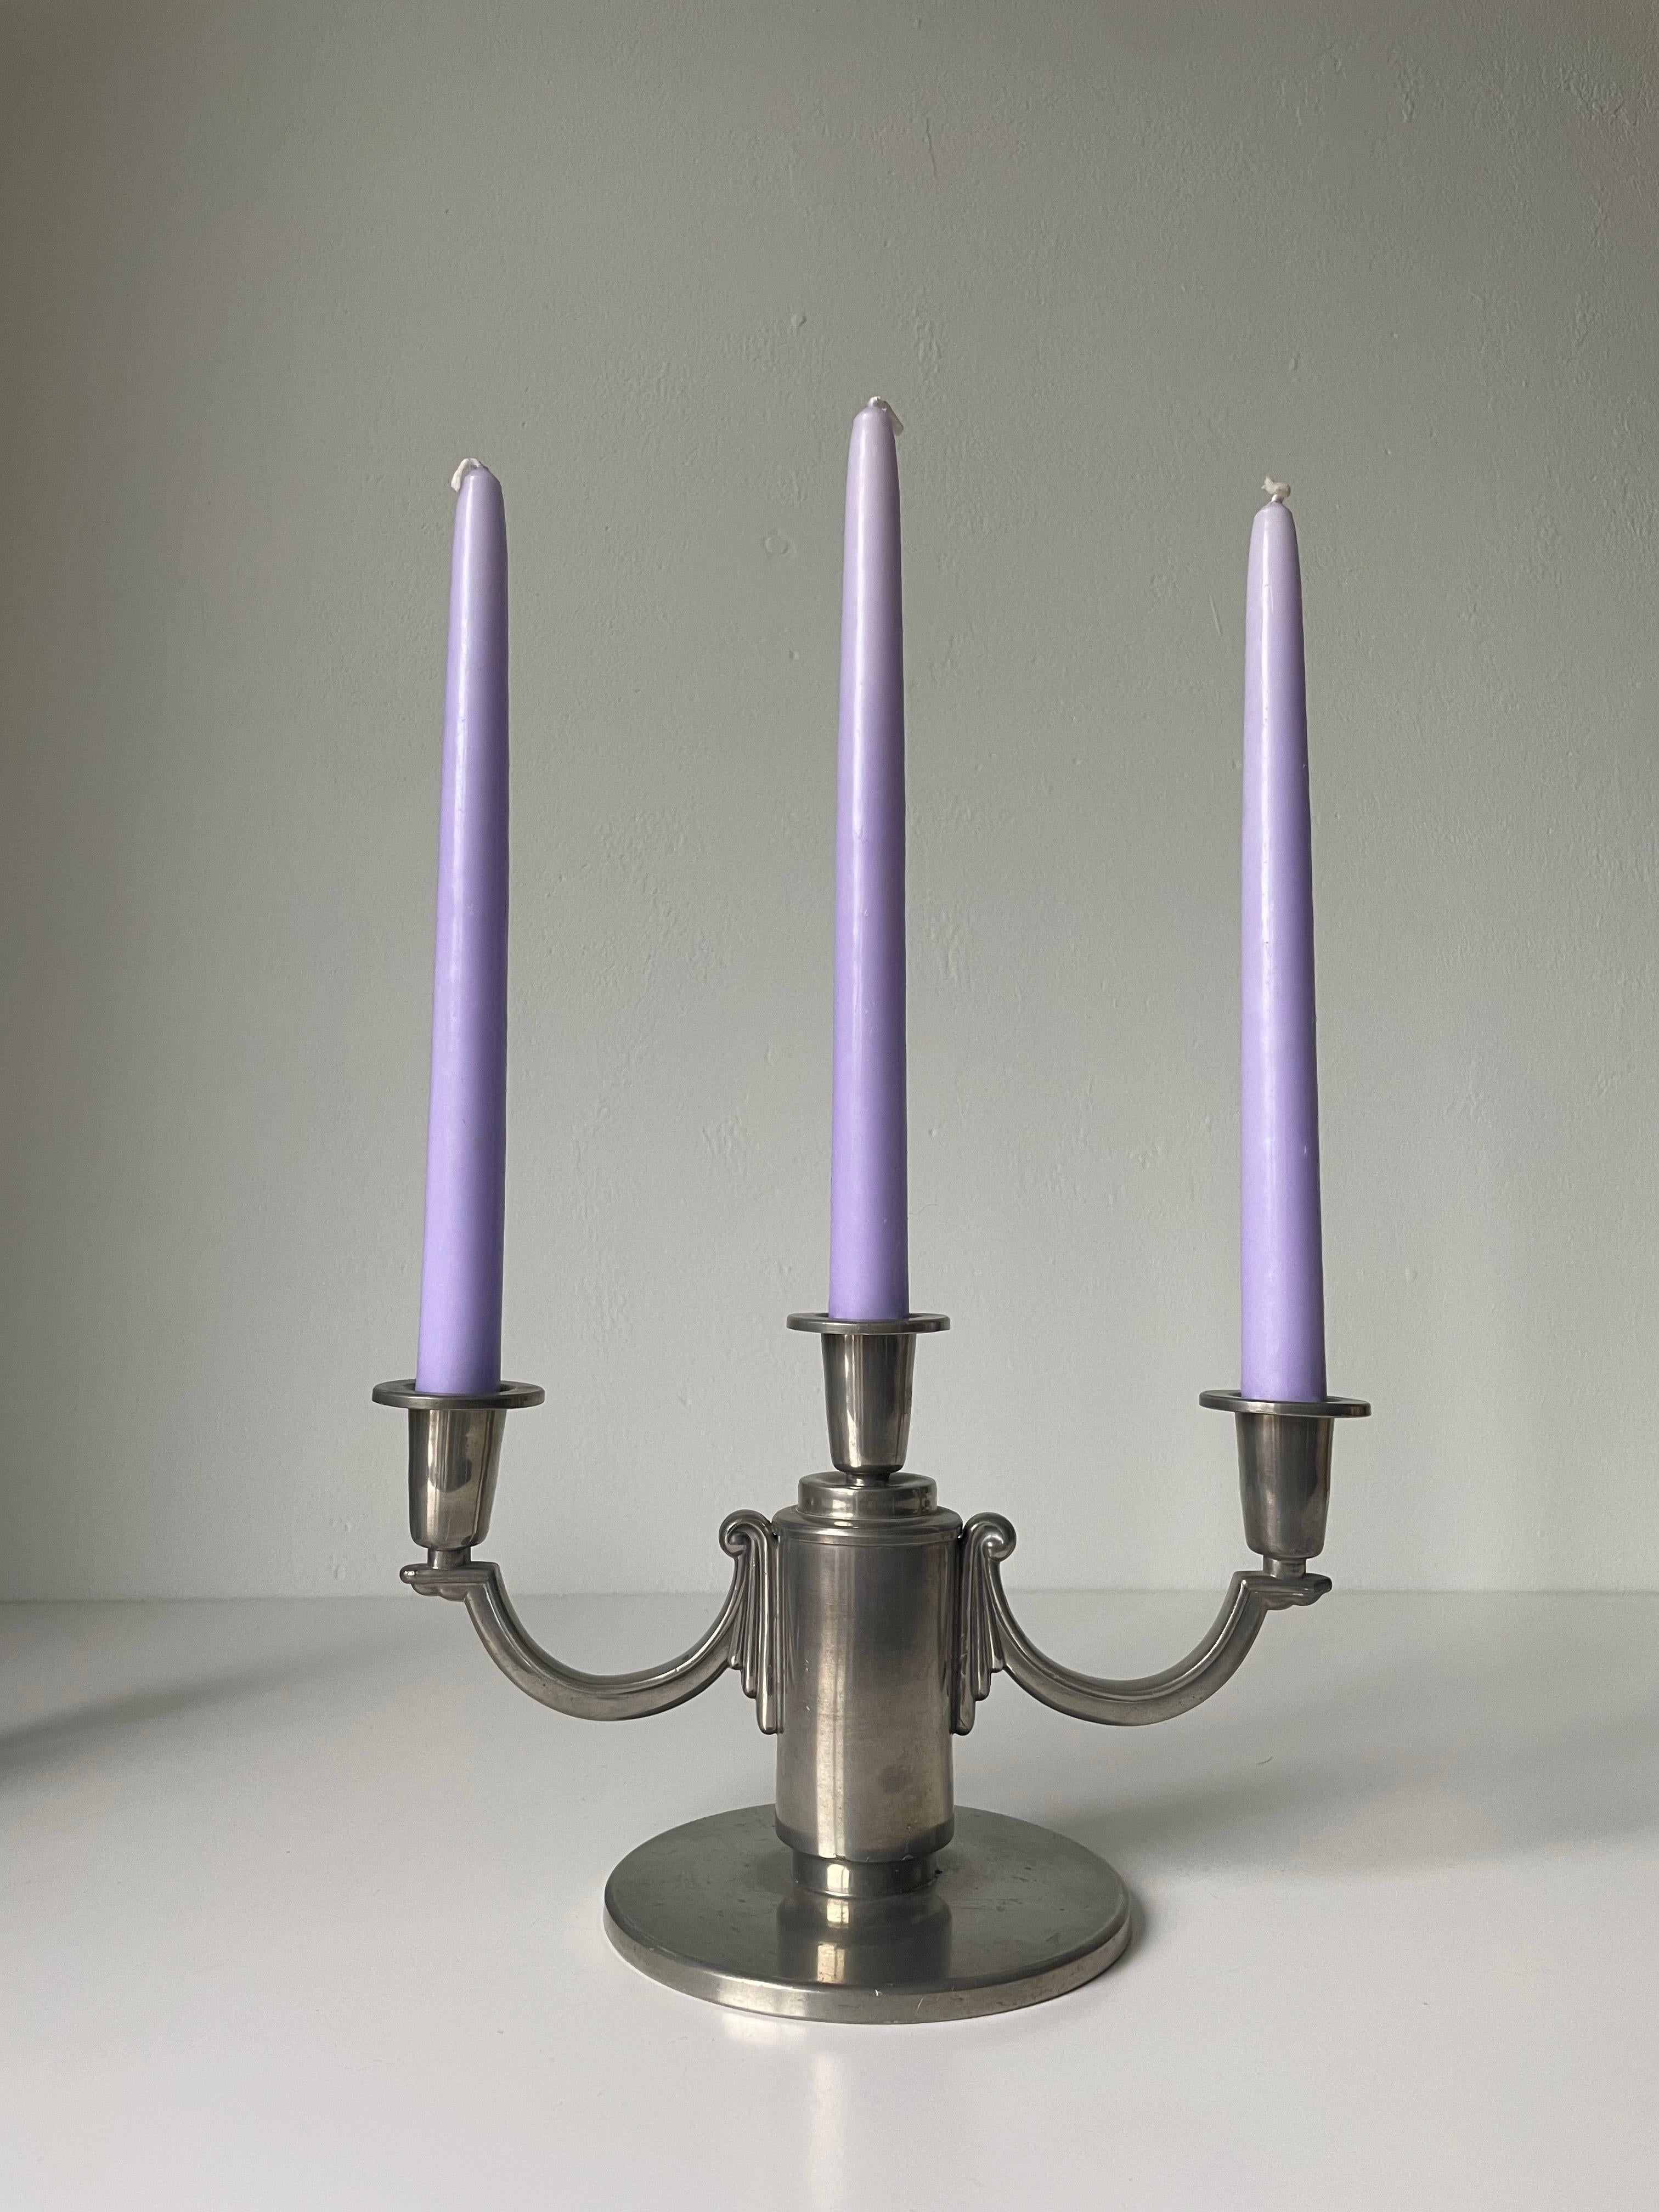 Paire de candélabres en étain et en argent de style Arte Antiques, conçus et fabriqués à la main par Lundin & Lindberg dans les années 1930. Les deux sont estampillés I.L.A. sous la base et sont en très bon état. L'un d'entre eux présente une